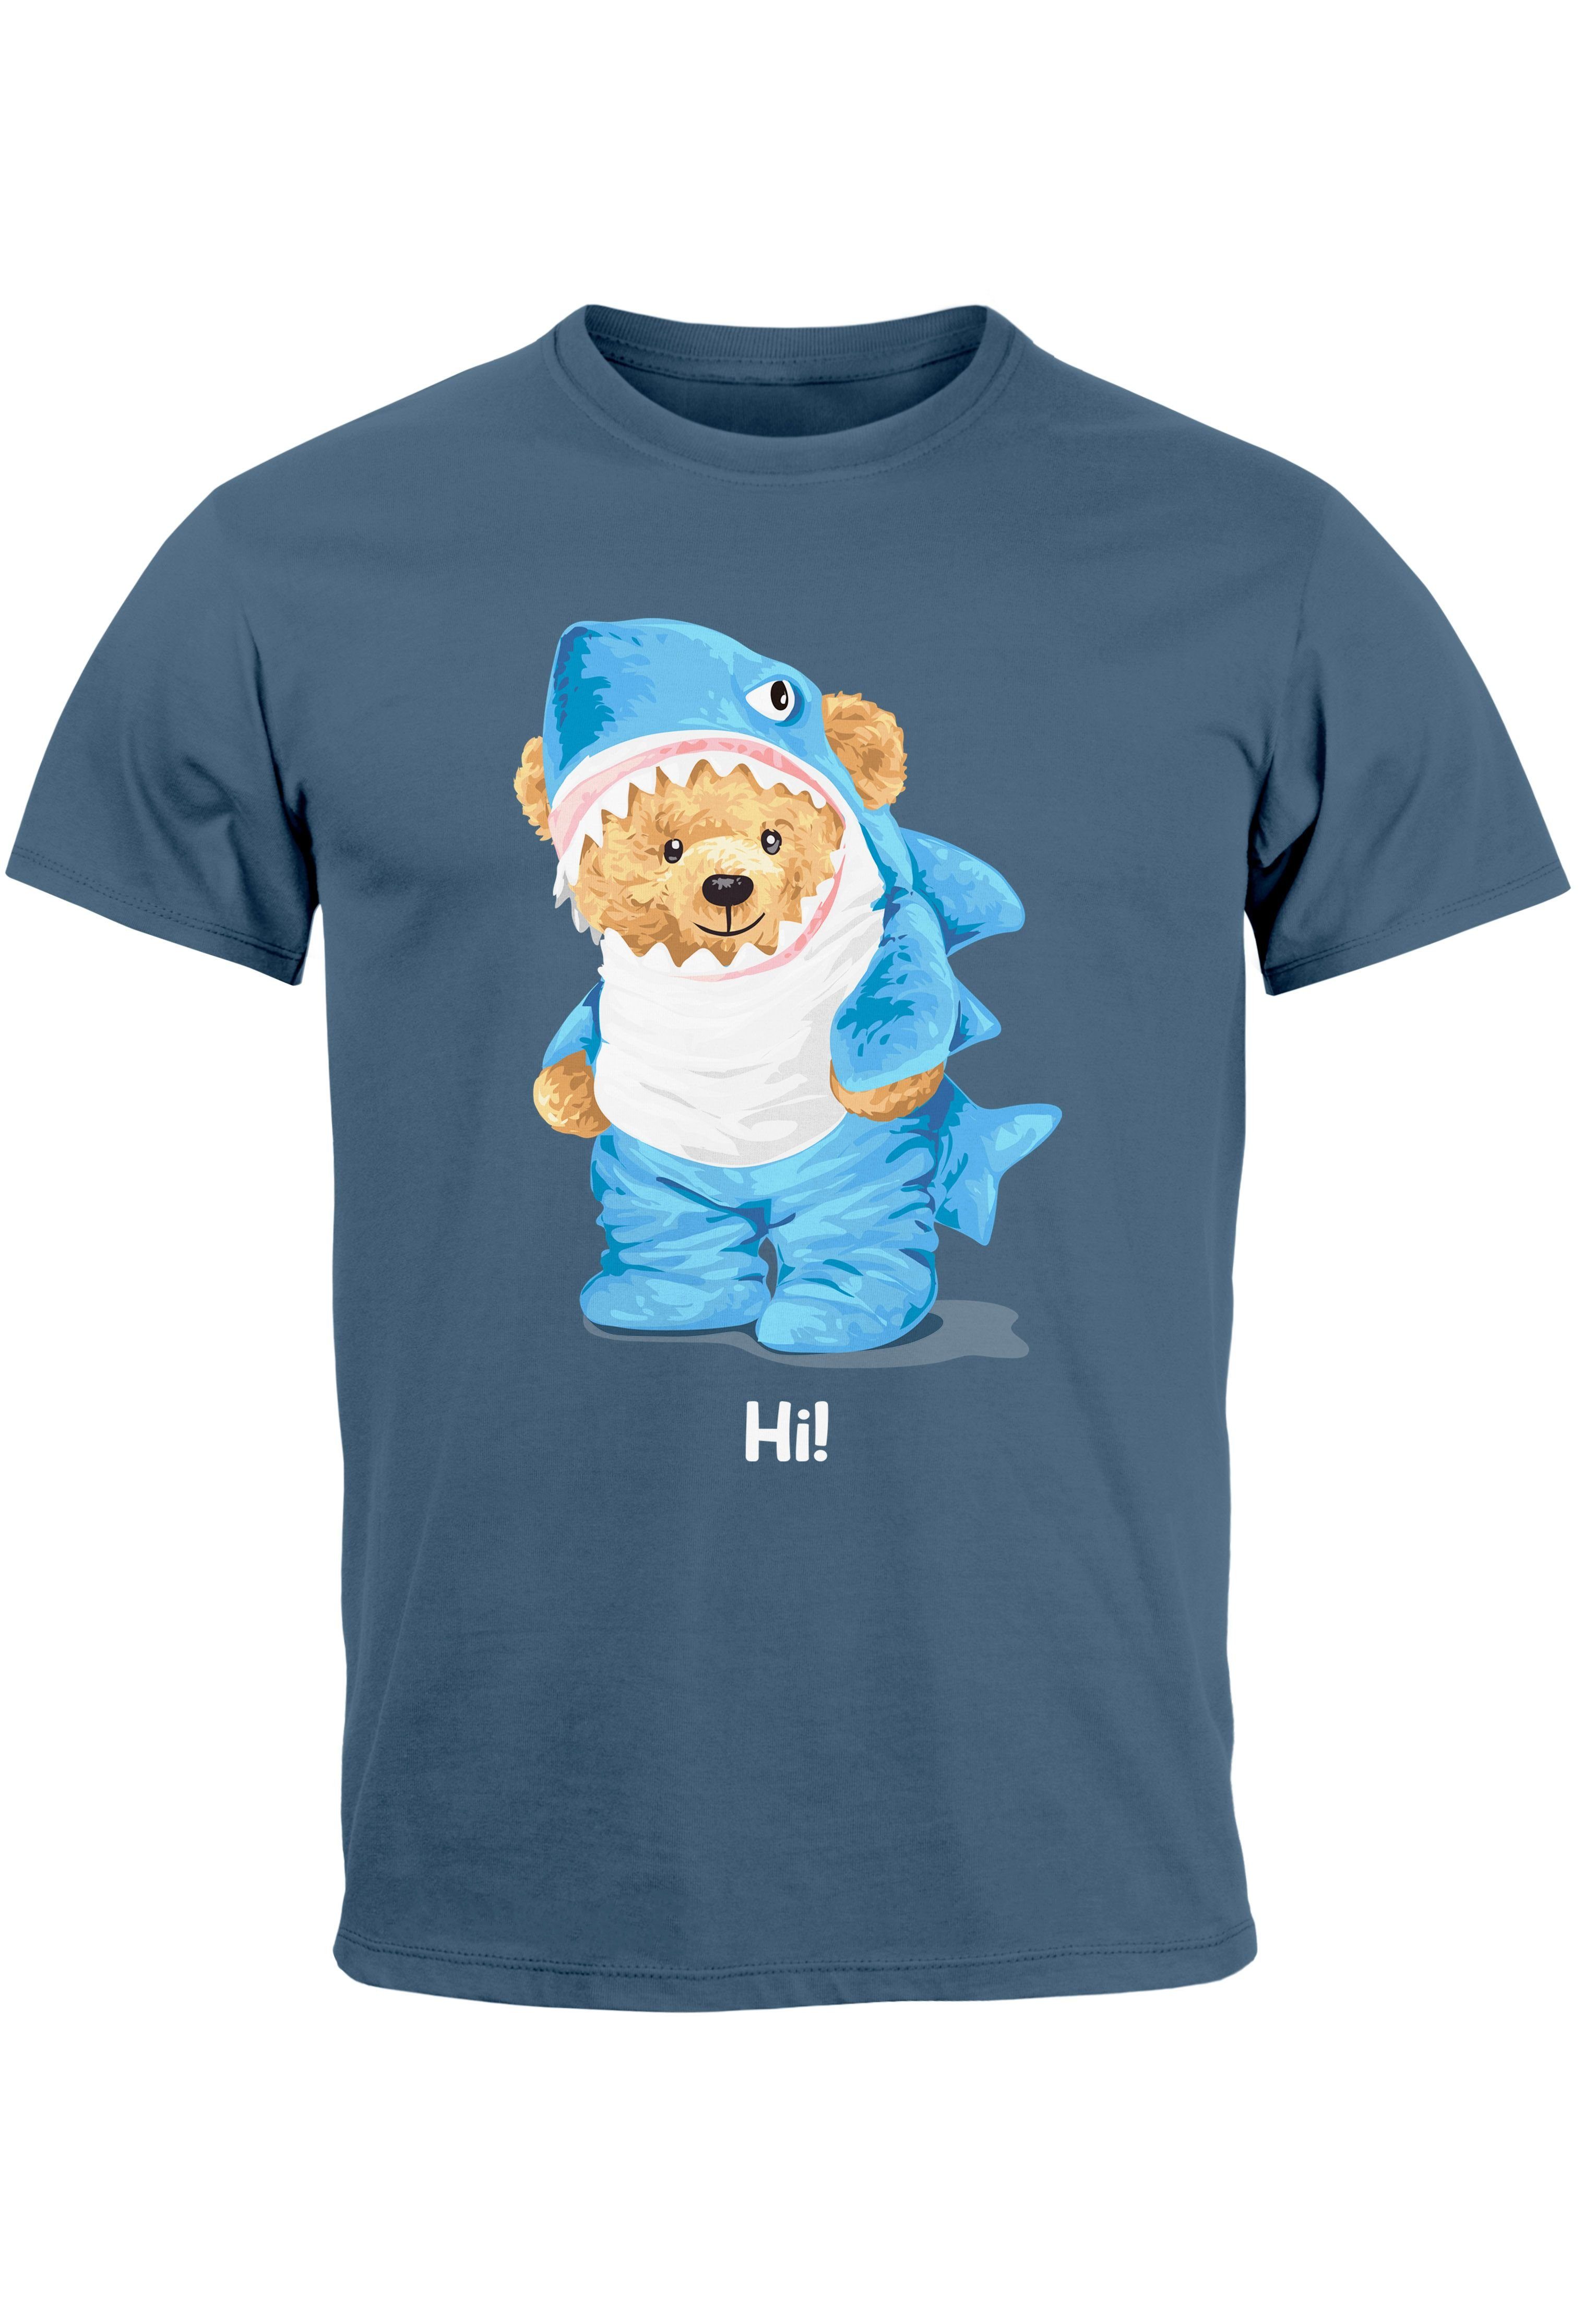 Herren mit denim Printshirt Aufdruck Teddy Bär Witz Neverless blue Print Print-Shirt Hi Fashi Parodie T-Shirt Hai